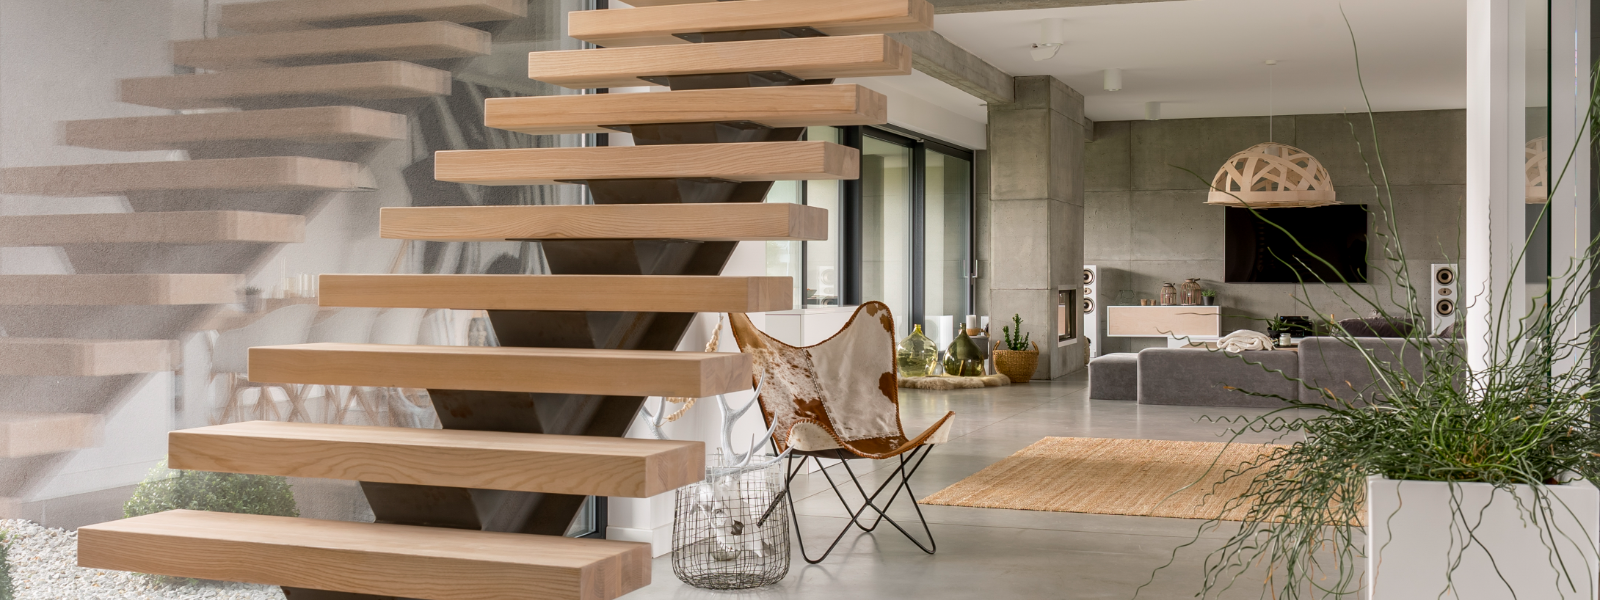 ALLESTONIA OÜ - Allestonia OÜ spetsialiseerub metallist ja puidust treppide projekteerimisele, valmistamisele ja paigald...